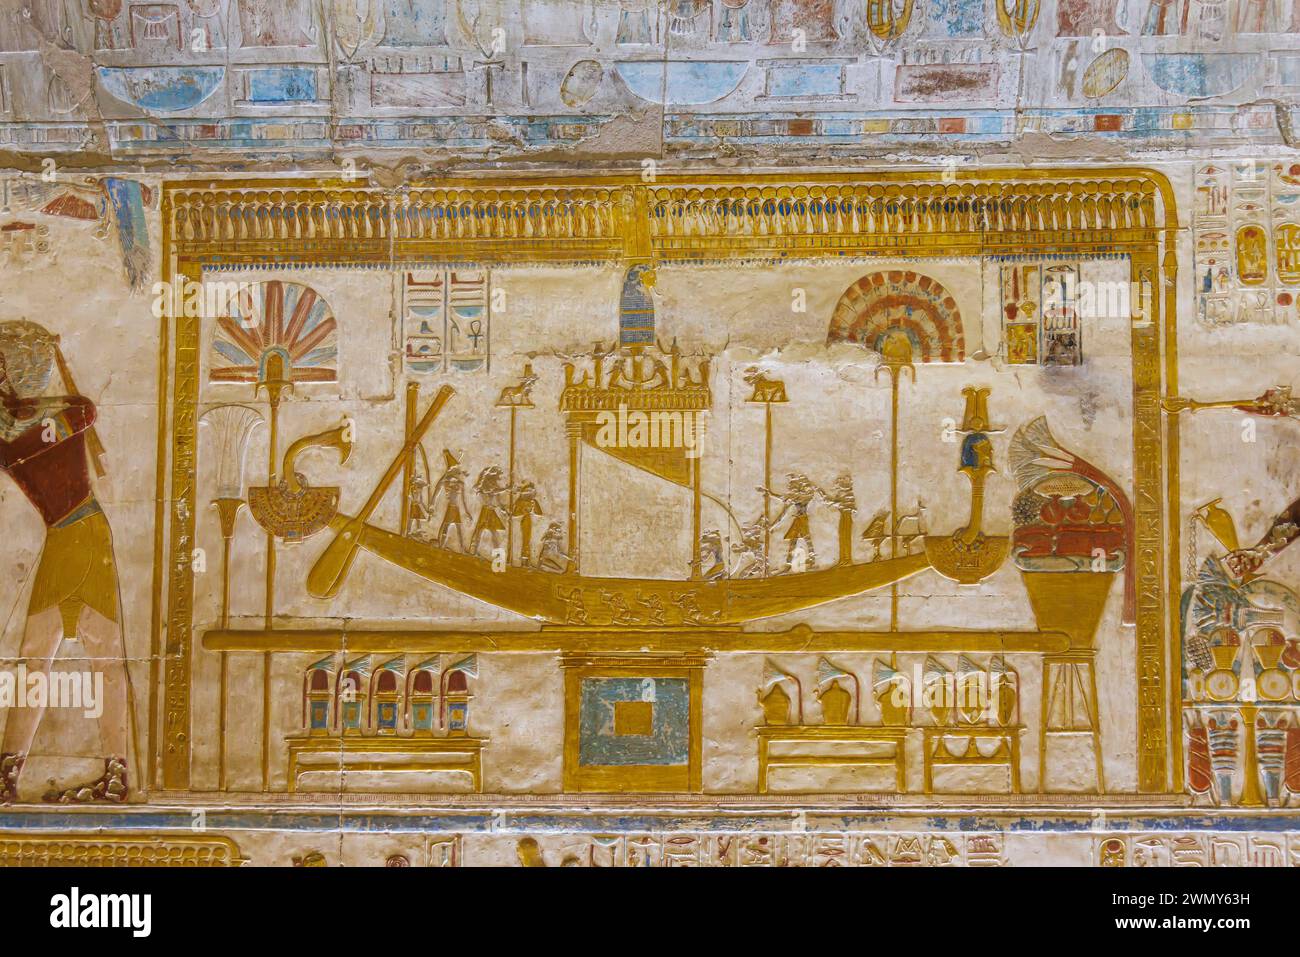 Egitto, Sohag, Abydos, città di pellegrinaggio dei faraoni dichiarata Patrimonio dell'Umanità dall'UNESCO, tempio di Seti i, bassorilievo della barca sacra Foto Stock